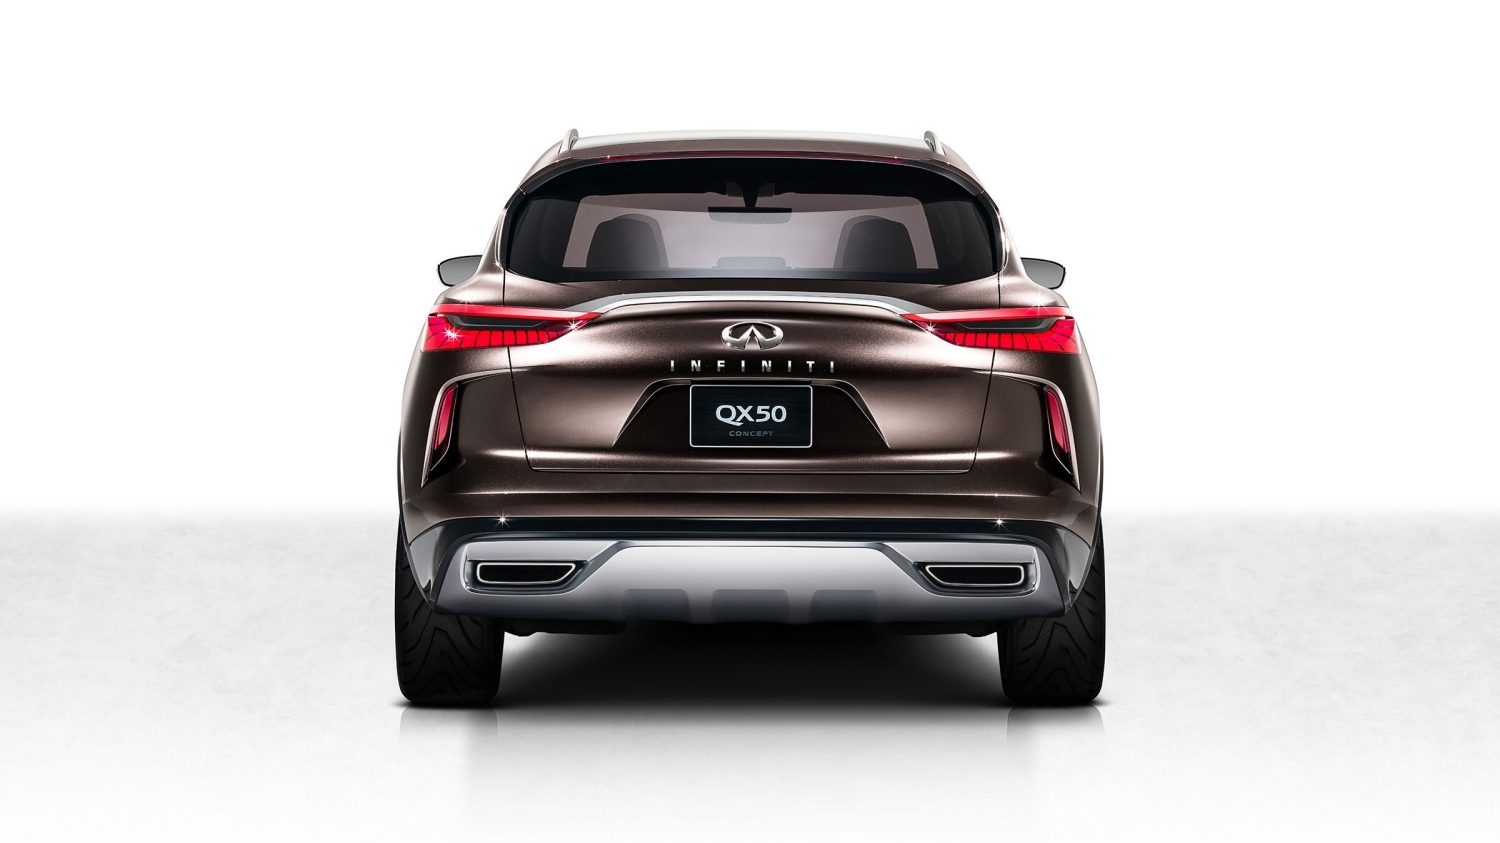 INFINITI QX50 Concept crossover, rear profile in brown